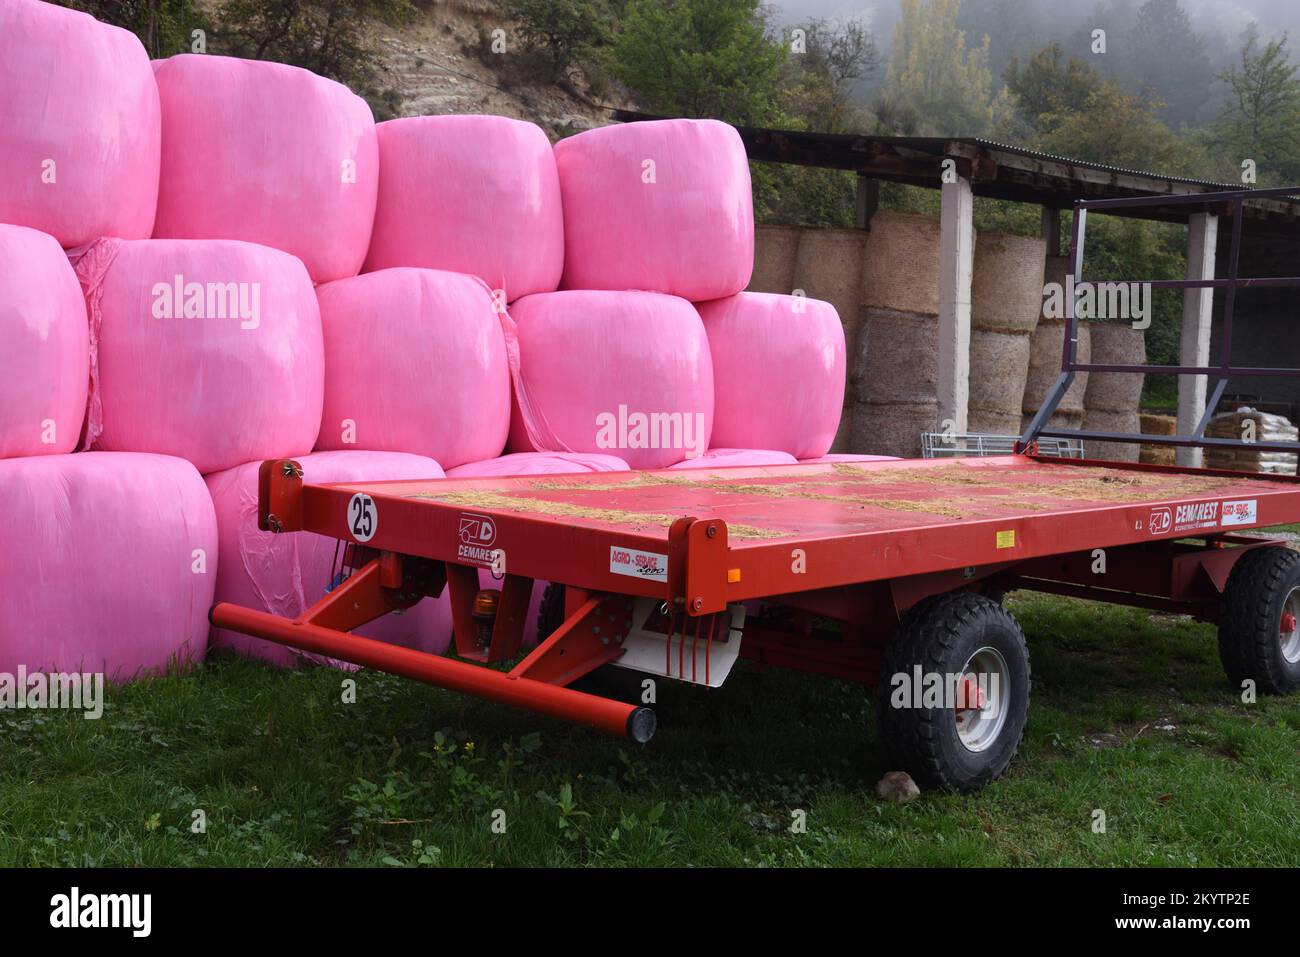 Balles de foin rose enveloppées dans un chariot ou une remorque de foin rouge de polyéthylène rose et une étable de foin Banque D'Images